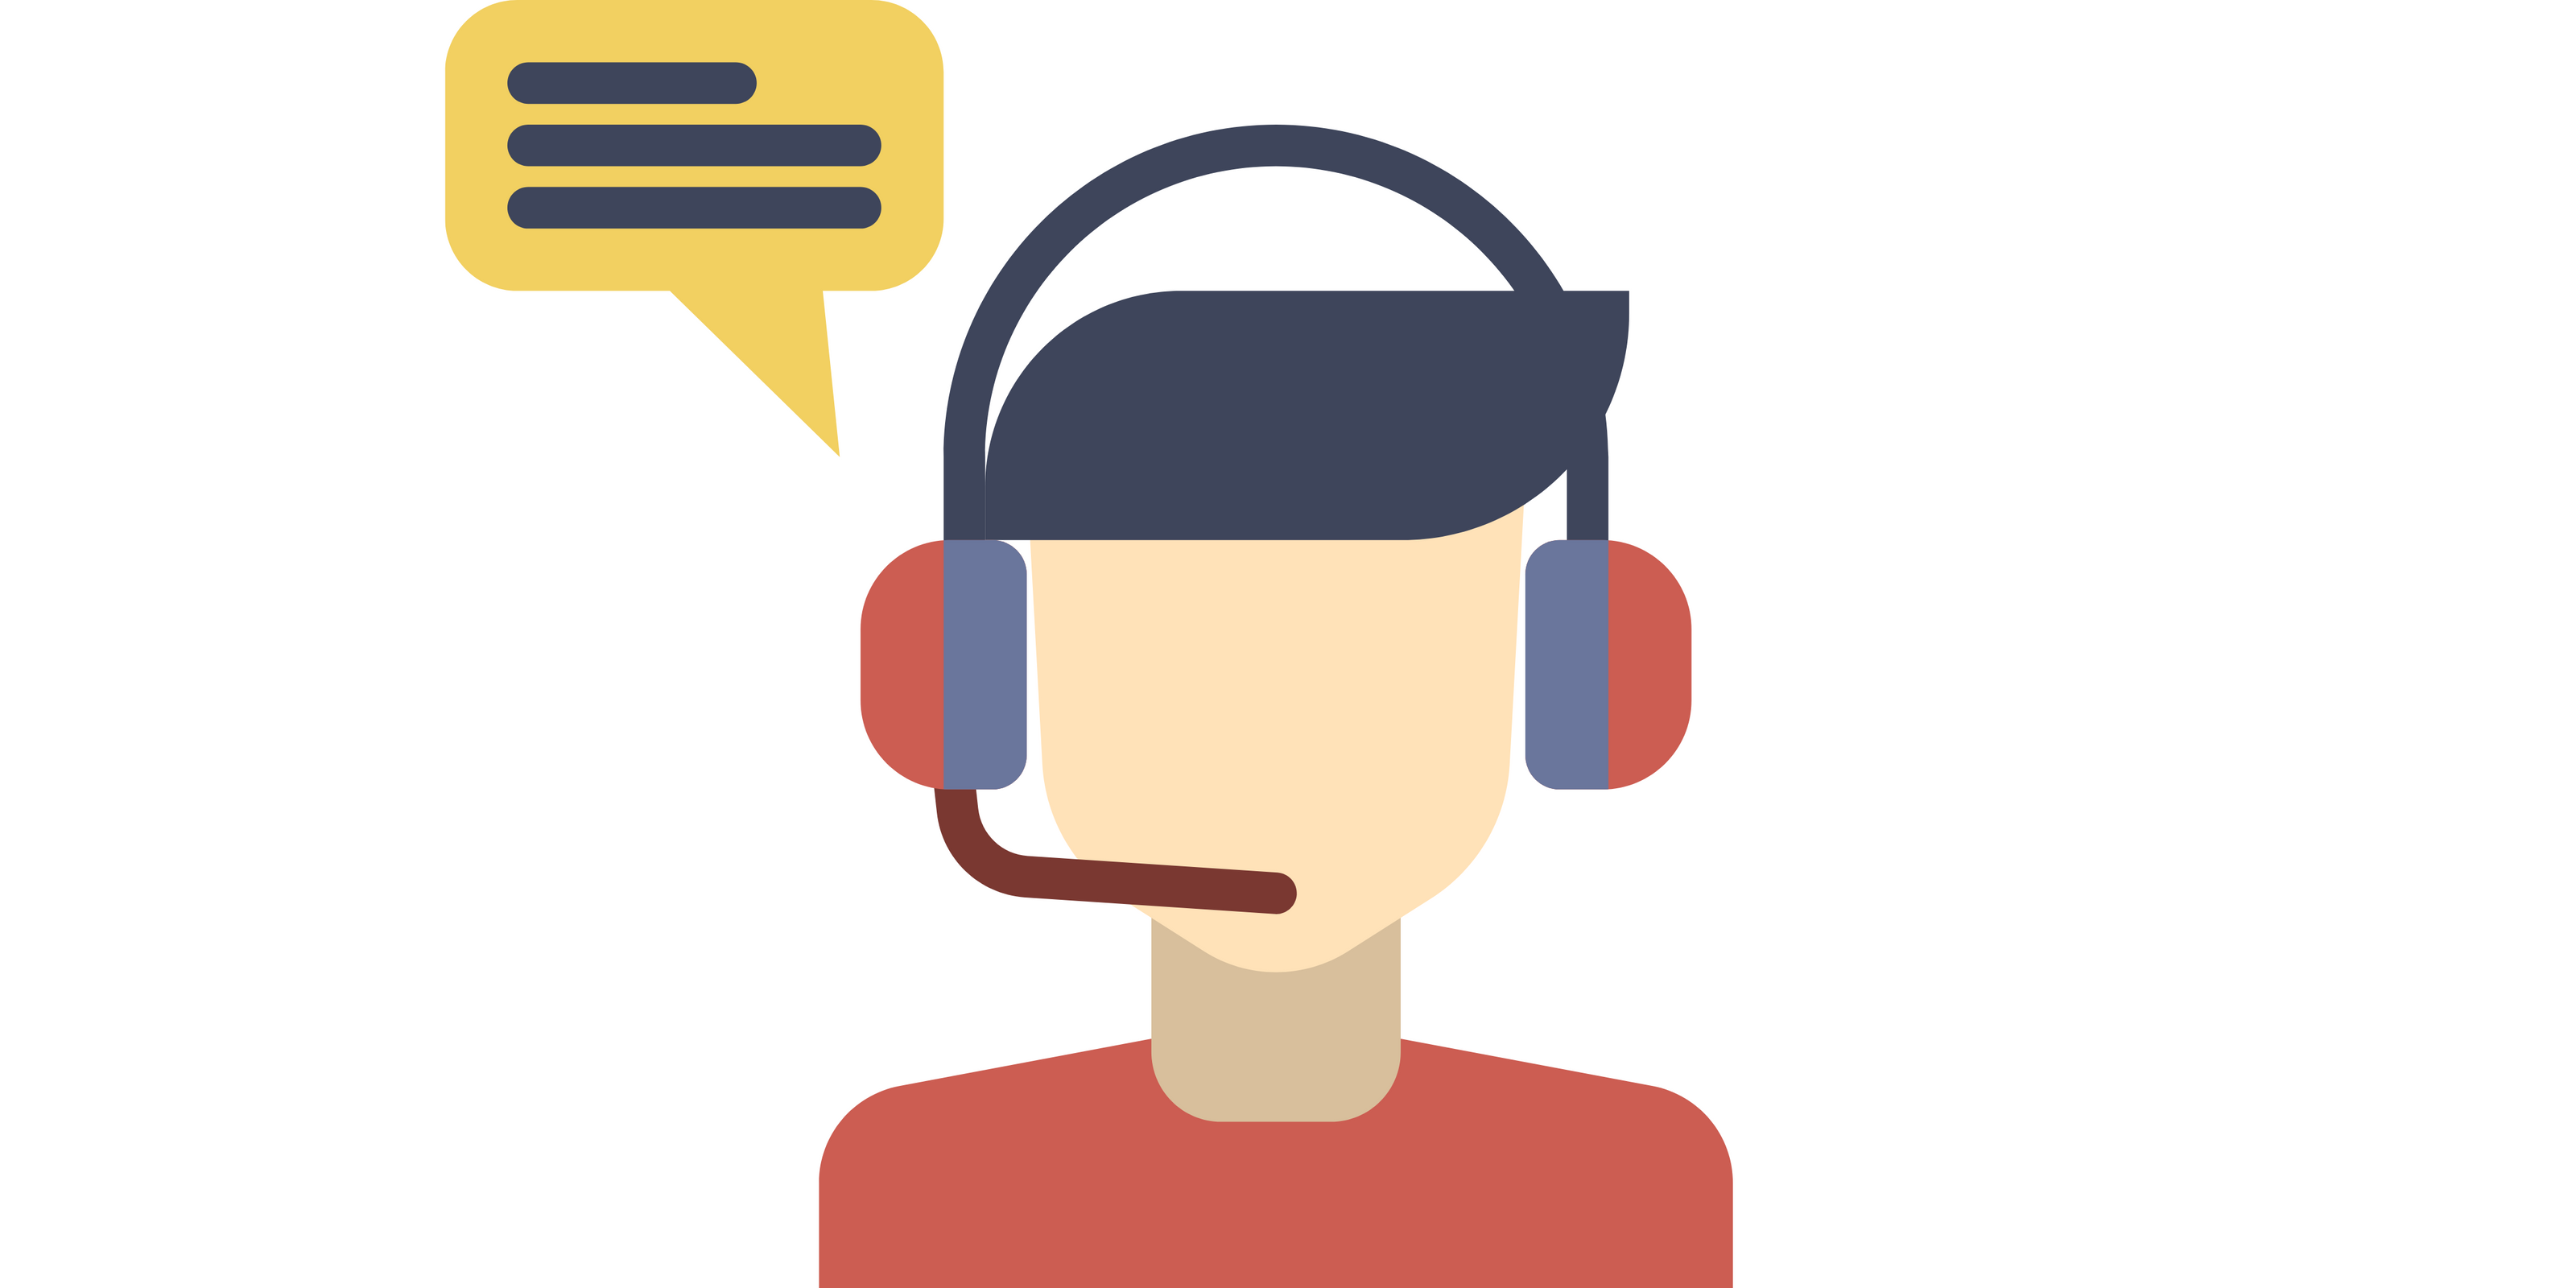 PNG sous forme d'icone contenant une personne avec un casque et micro pour communiquer avec d'autres personnes, indiquant la disponibilité d'un service clientèle pour vous chez Dercay.